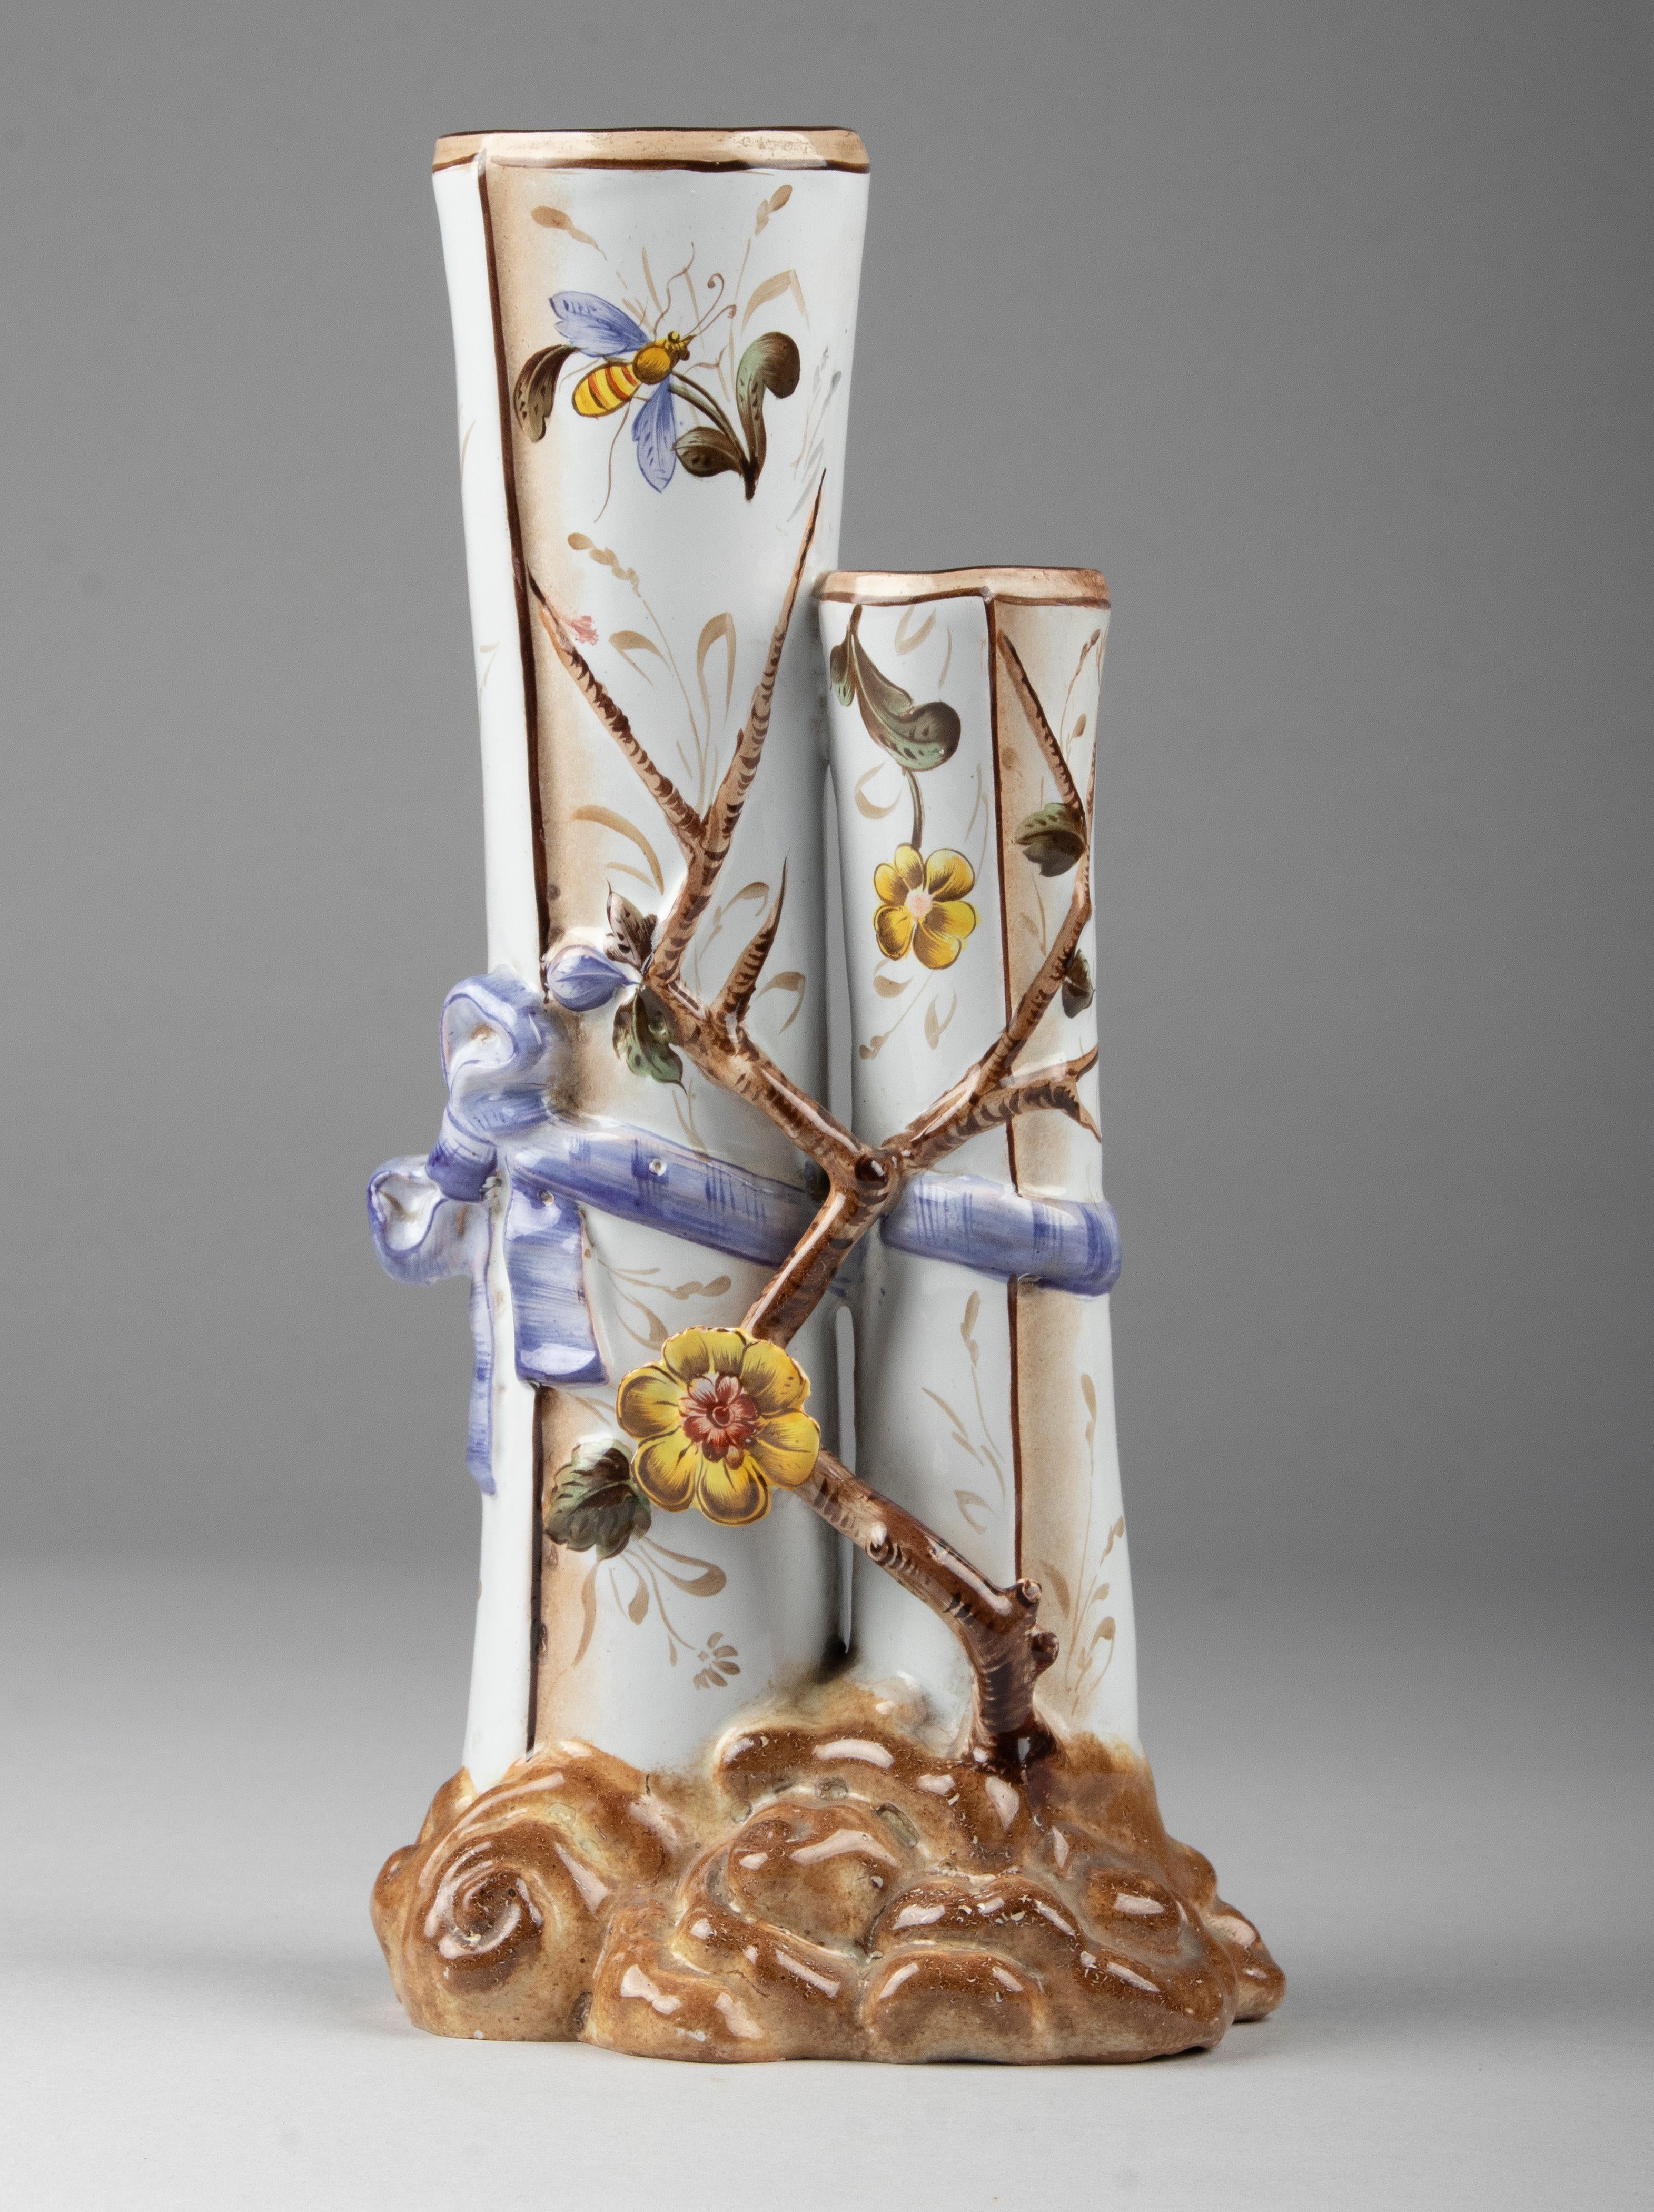 Schöne keramische Jugendstil-Vase, signiert om den Fuß Saint Clément.
Die Vase ist mit Blumen, Zweigen und Insekten handbemalt. Die Vase ist in sehr gutem Zustand.